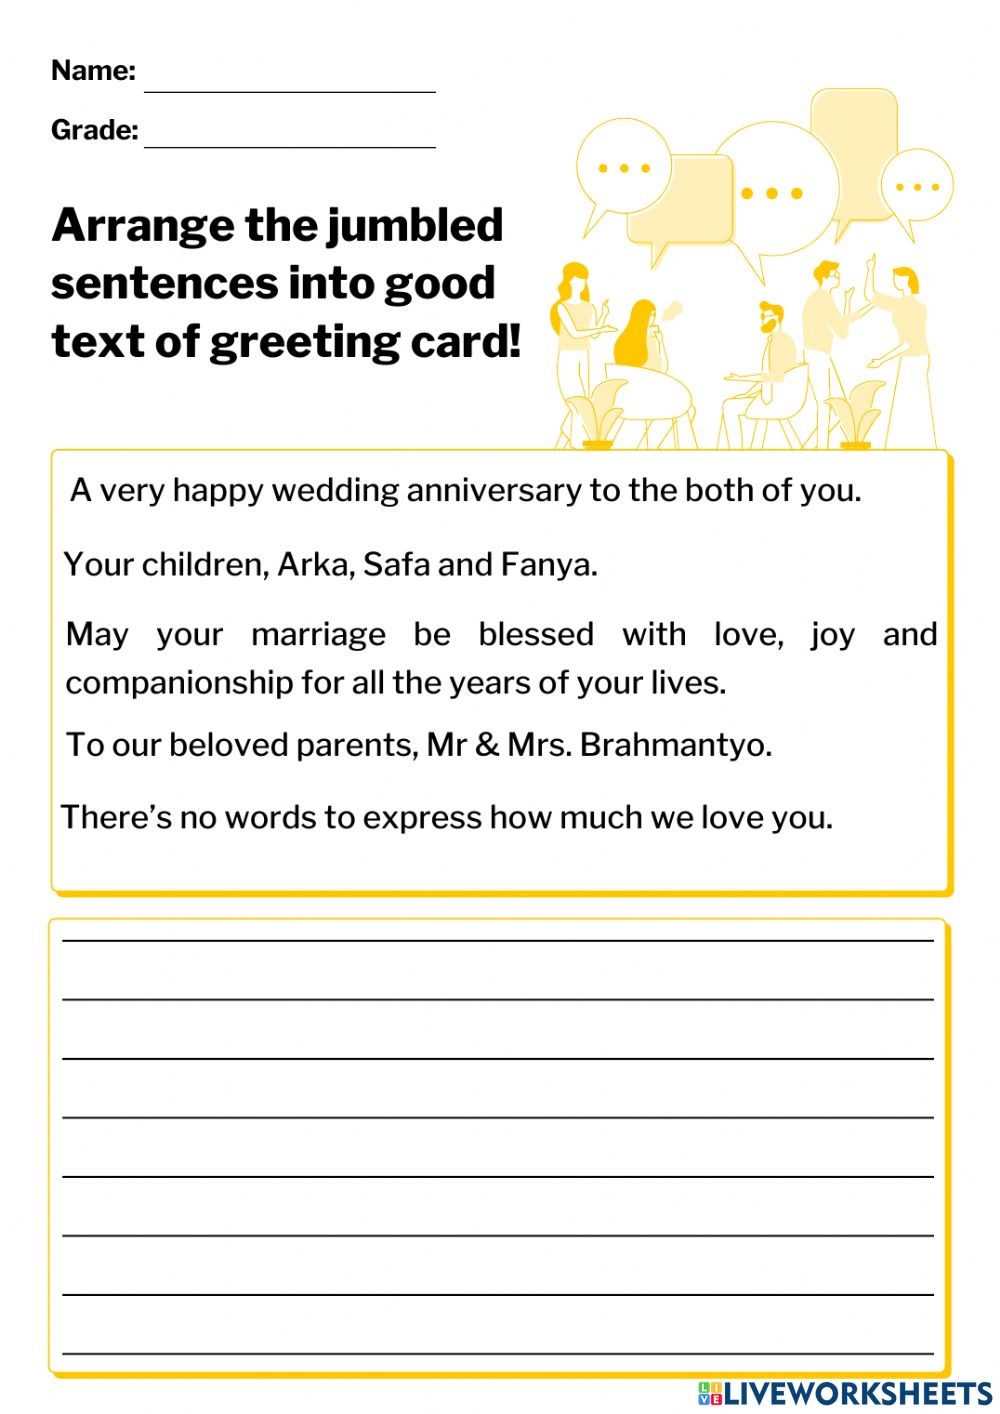 Jumbled Sentences Greeting Card Worksheet